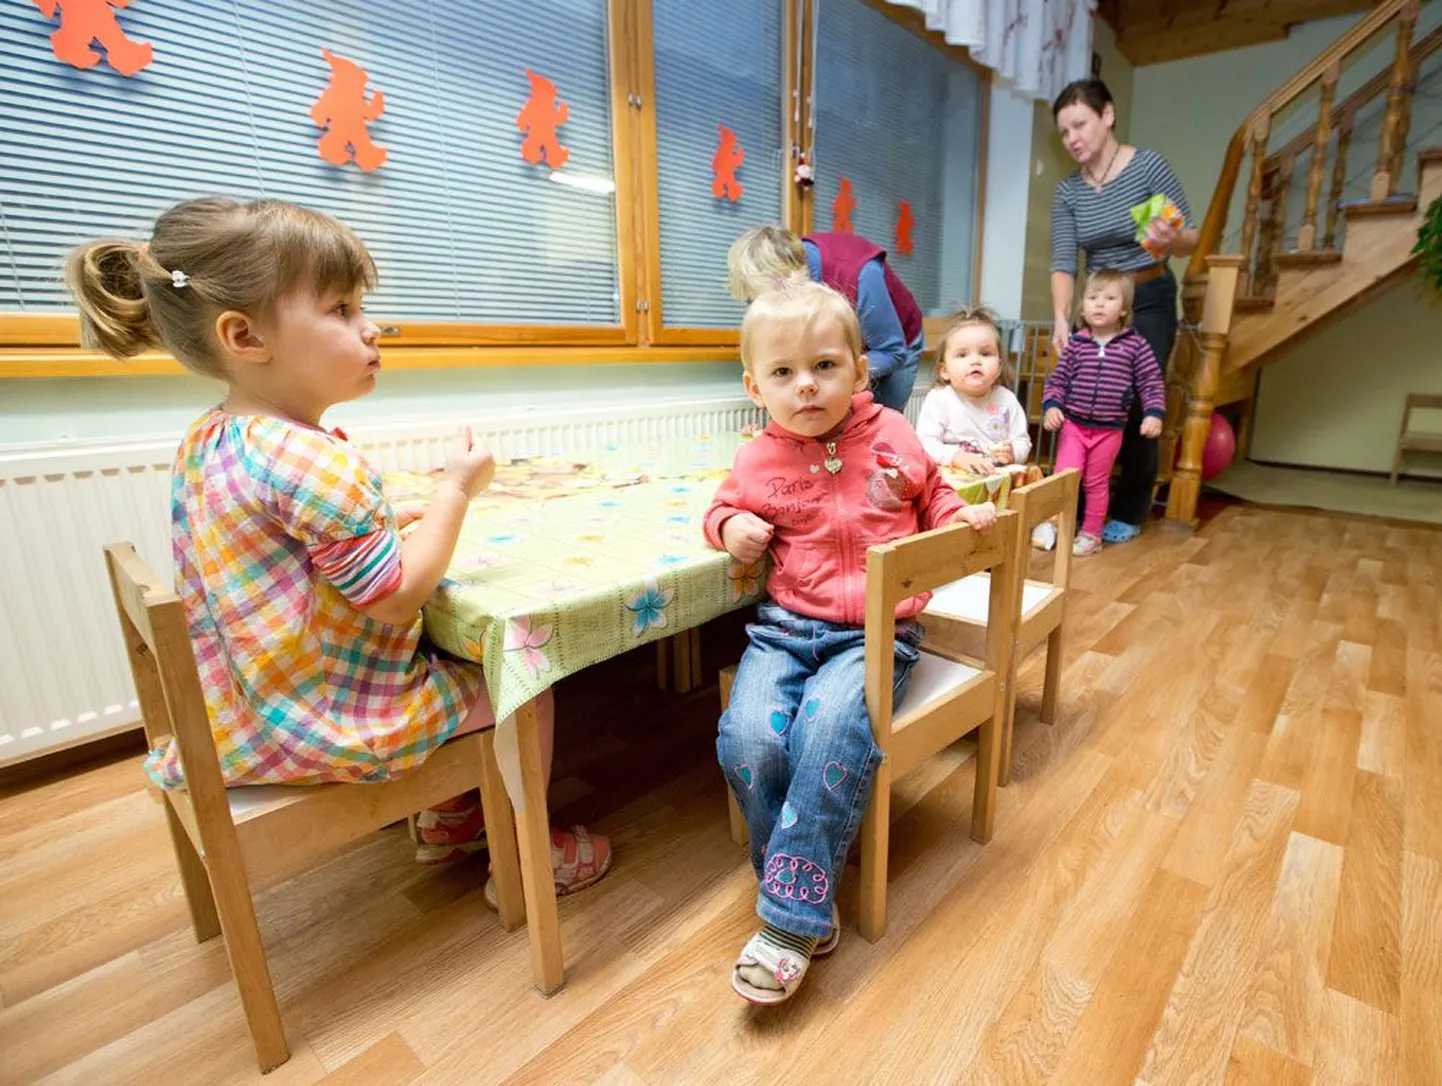 2009. aastast tegutsev Nöpsiku lastehoid on Tallinnas üks odavamaid – veidi üle 300 euro koos toiduga täiskuu eest, millest kohalikud omavalitsused katavad 106-211 eurot. Kuna sõimekohti Tallinnas ei jagu, ei jää töötavatel vanematel muud üle, kui kopsakas osa palgast lapsehoiule kulutada. Seadusemuudatus peaks tulevast sügisest panema kohalikele omavalitsustele kohustuse hakata eralastehoiu eest maksma senisest oluliselt suuremat hüvitist, kui linn või vald ei suuda munitsipaallasteaedes kõigile soovijaile kohta tagada.